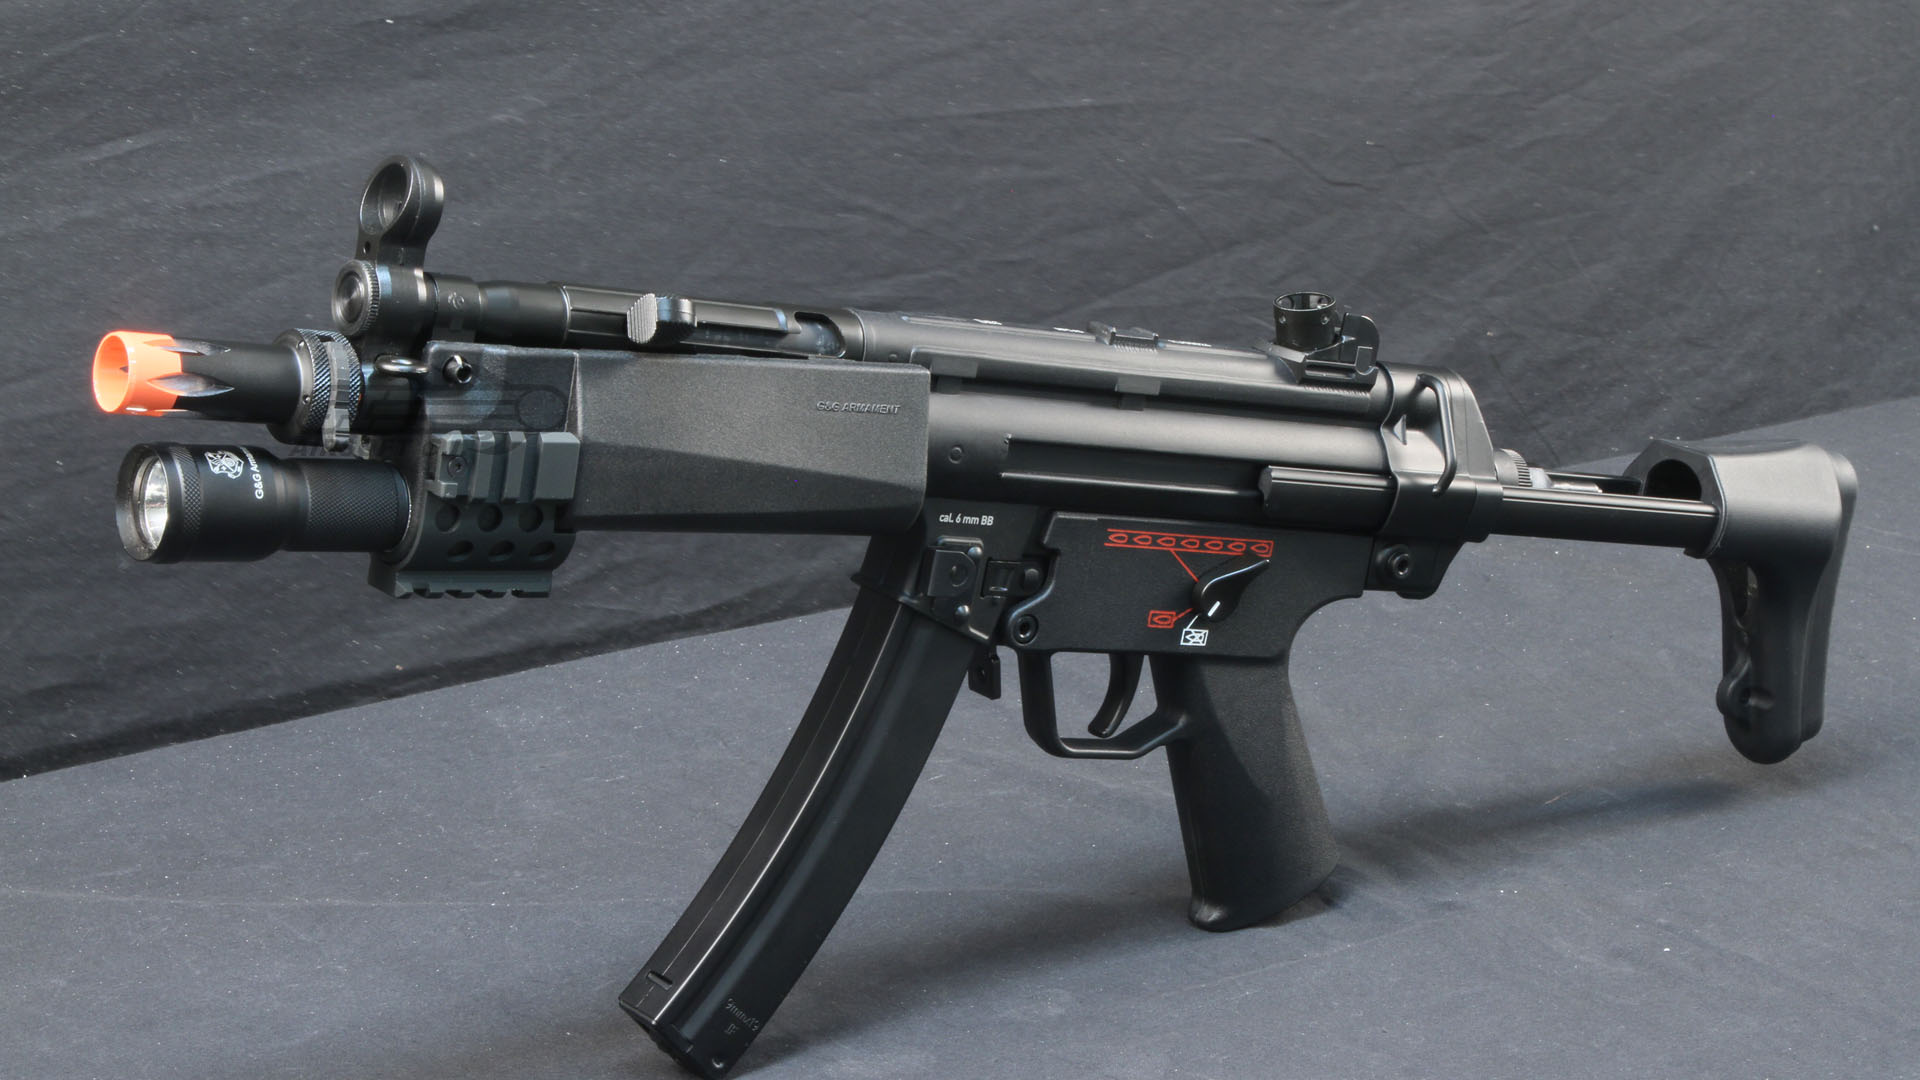 世界十大顶级冲锋枪排行:HK MP5系列冲锋枪